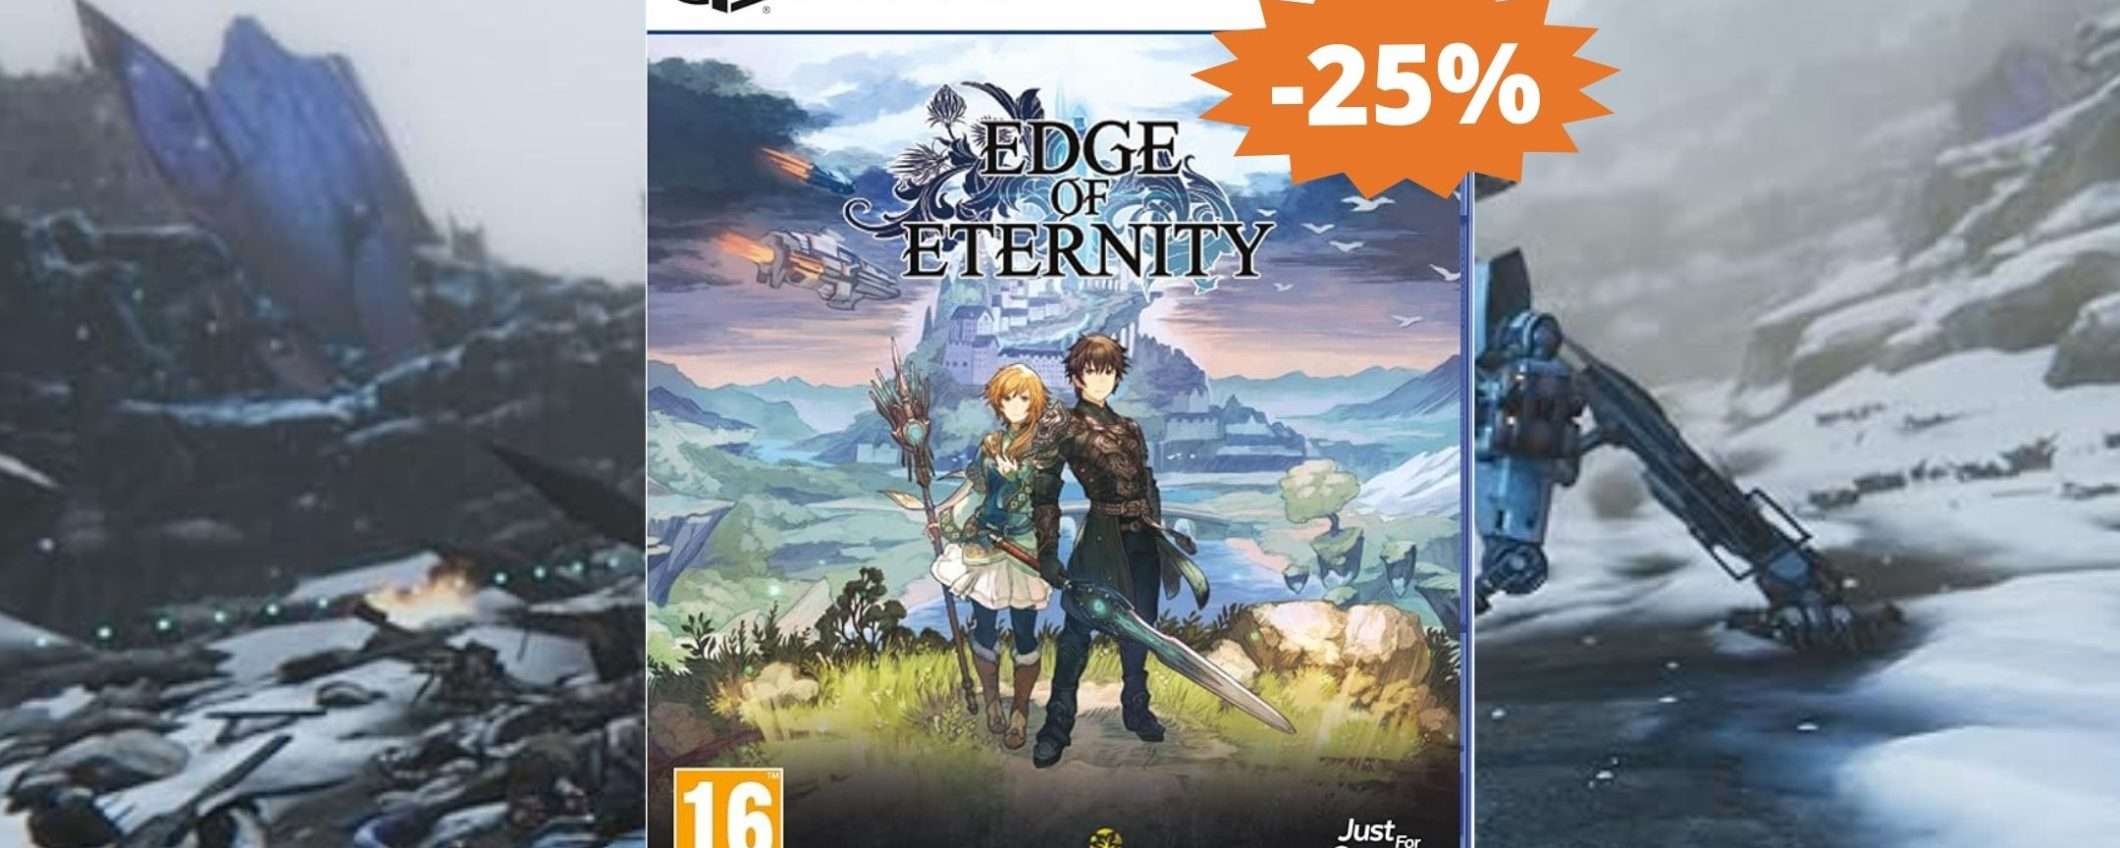 Edge of Eternity per PS5: SUPER sconto del 25% su Amazon